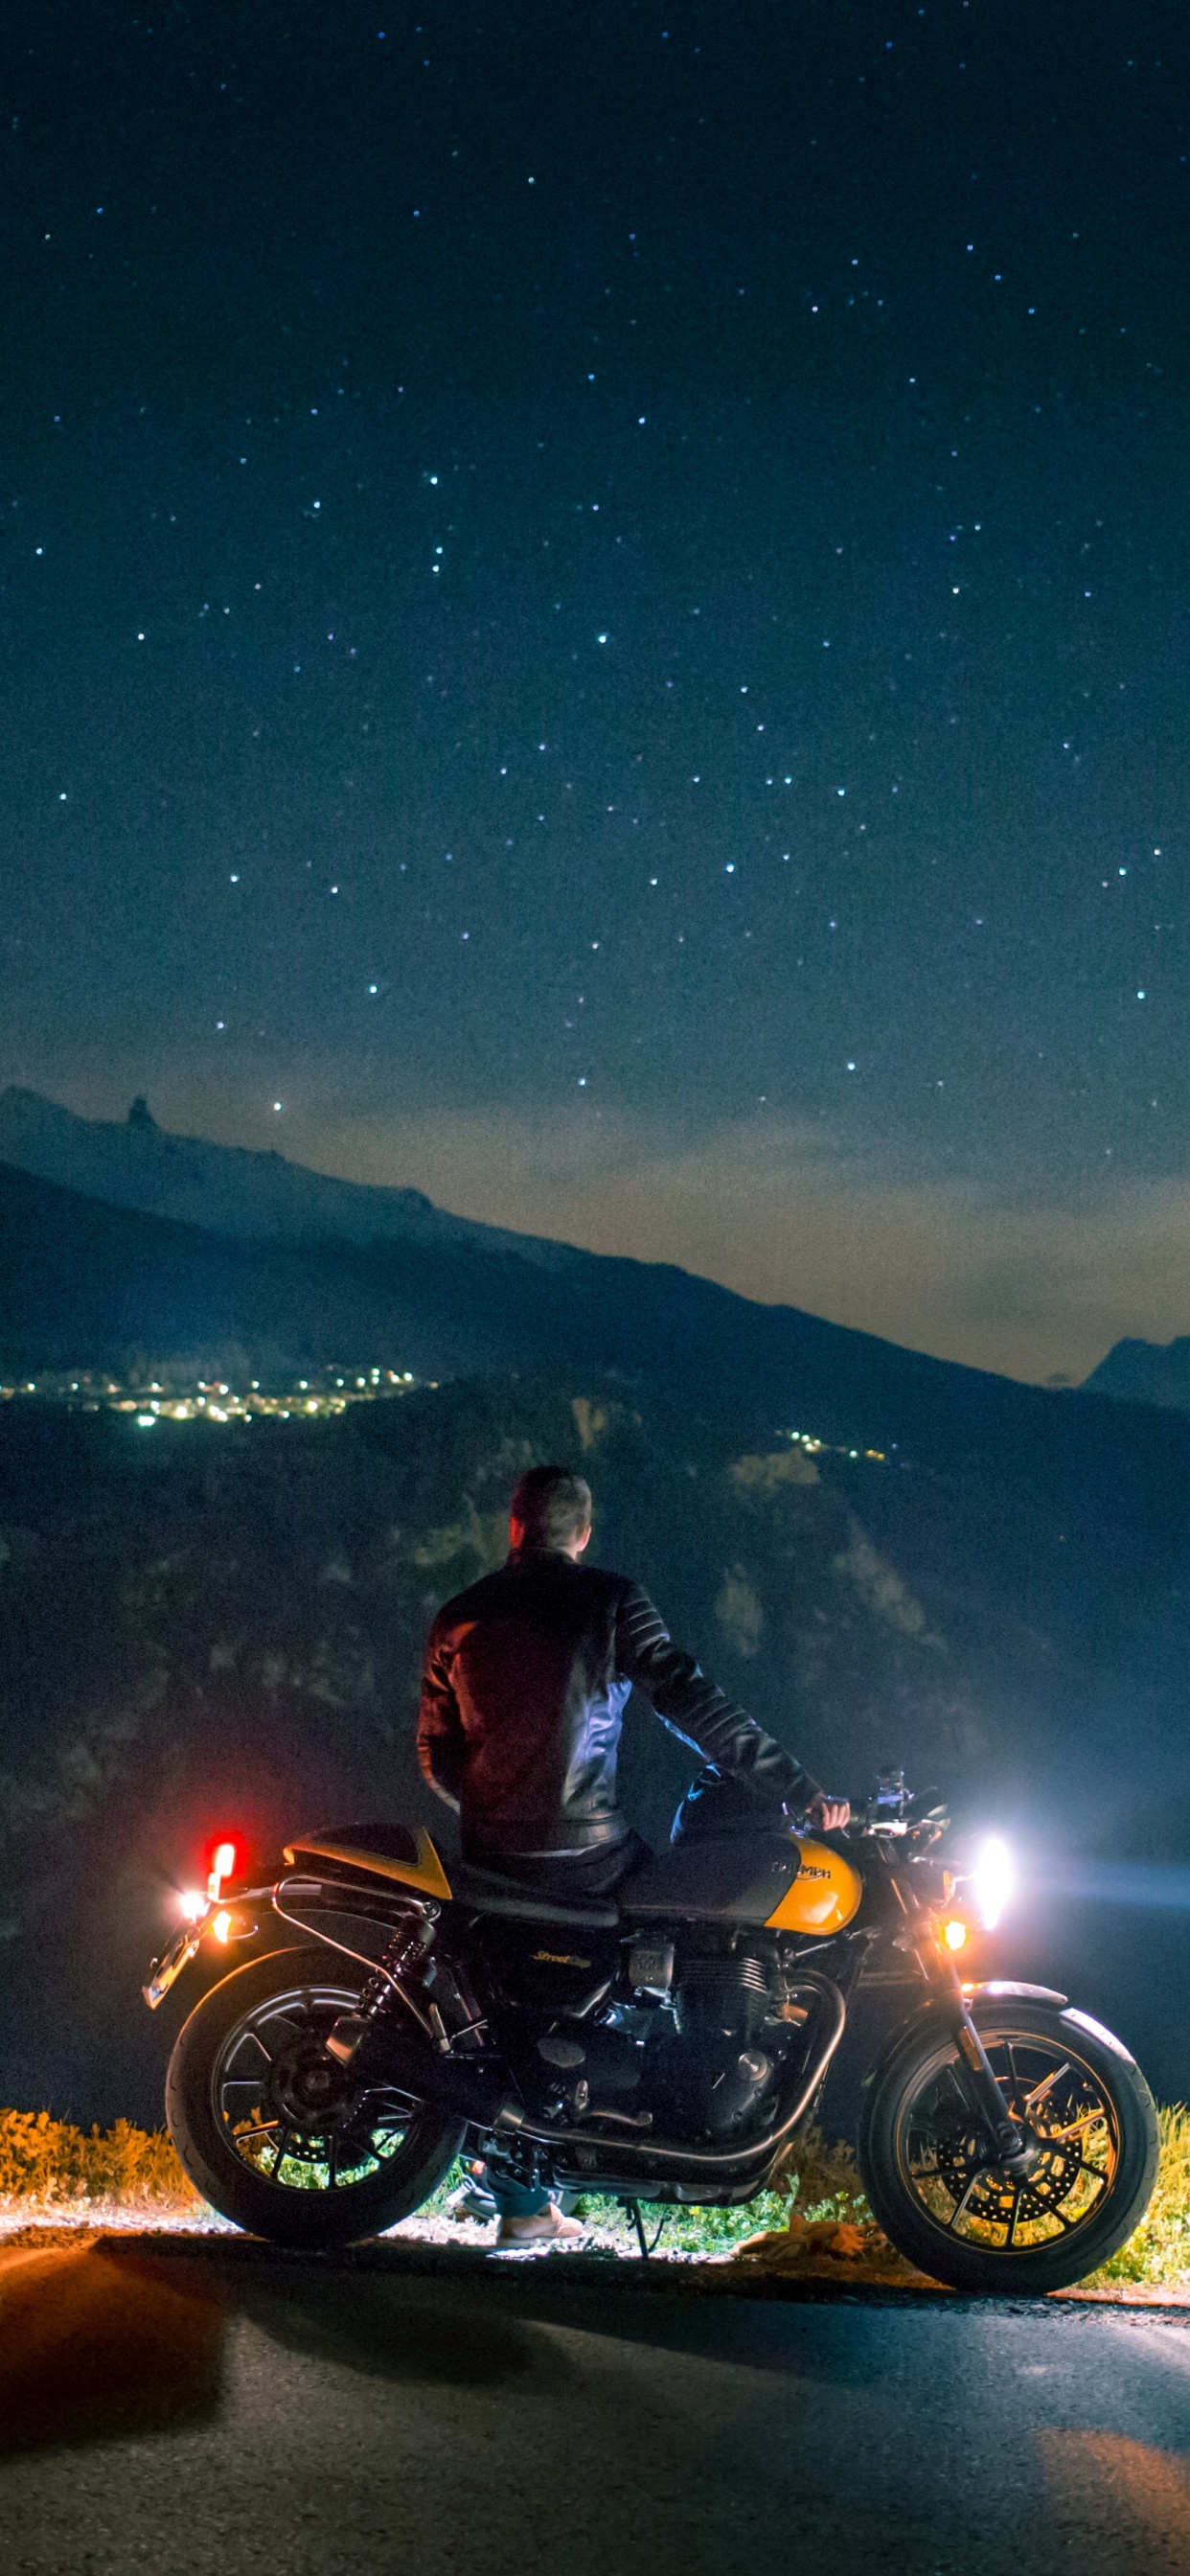 Homme Monté Sur Moto Sur Route Pendant la Nuit. Wallpaper in 1242x2688 Resolution